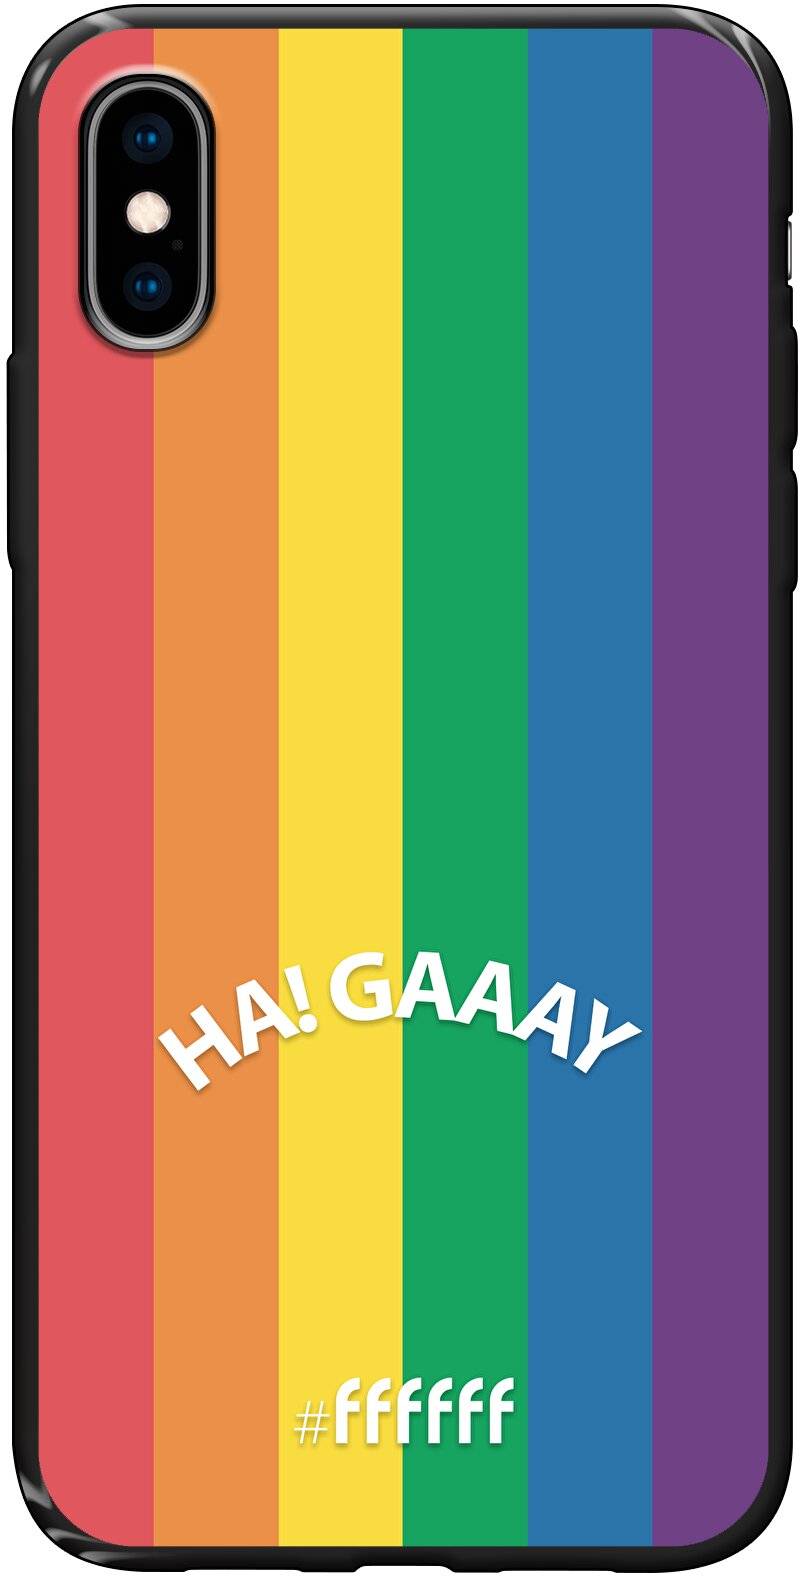 #LGBT - Ha! Gaaay iPhone X